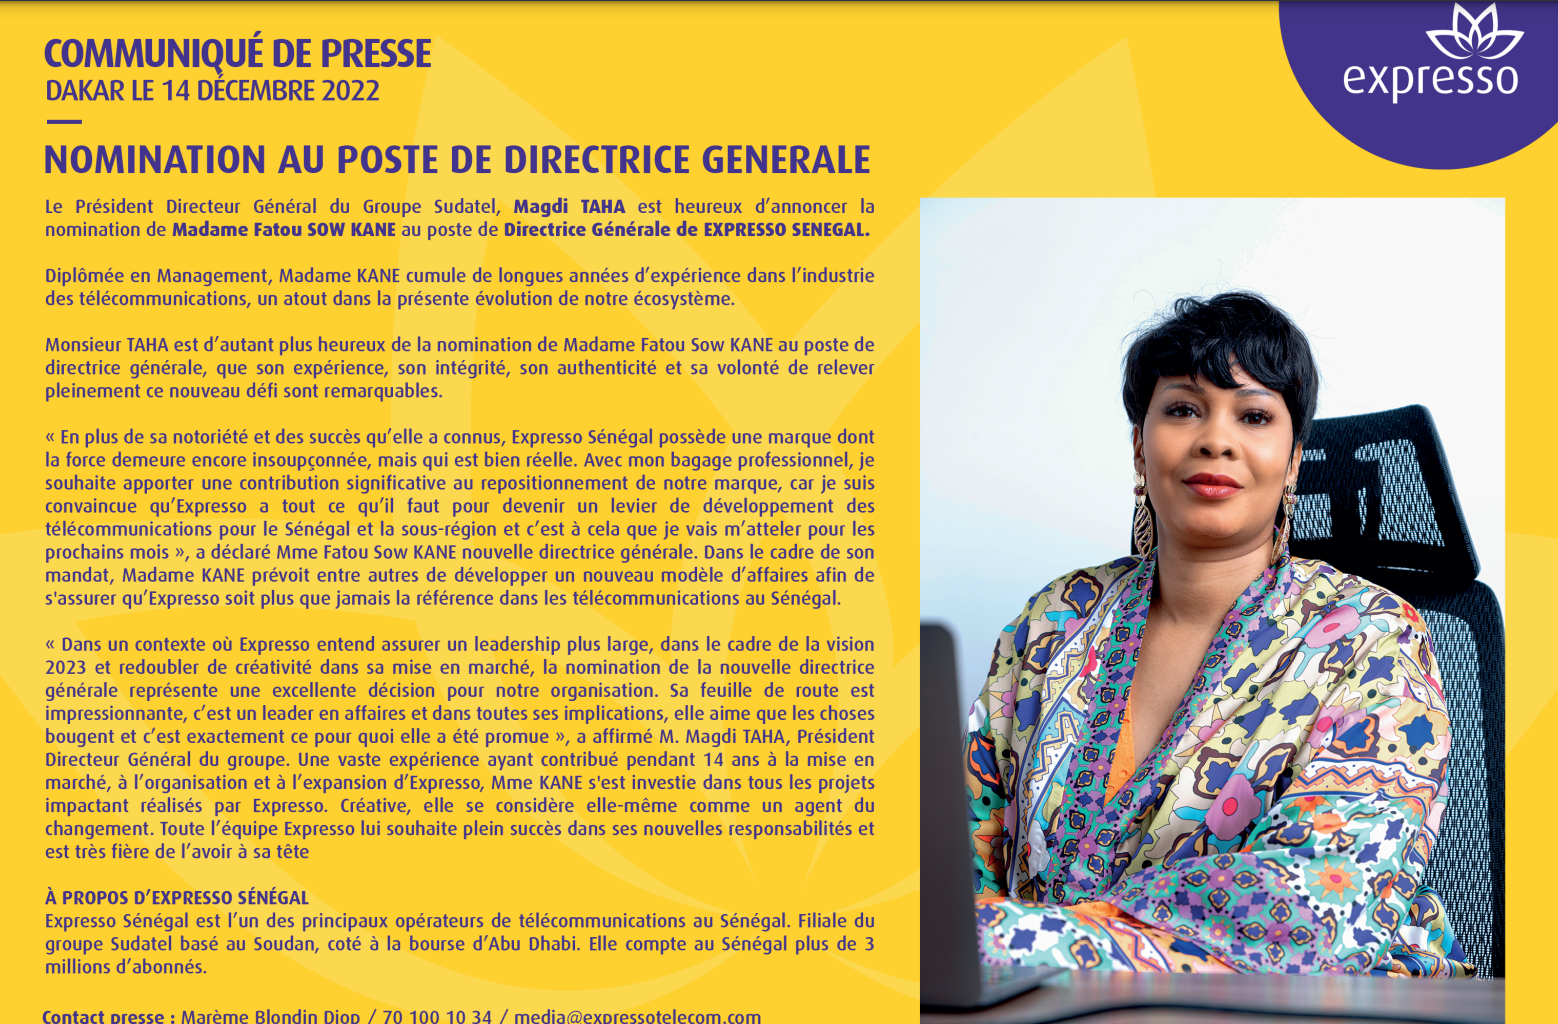 Nomination: Madame Fatou Sow Kane, nouvelle Directrice générale d'EXPRESSO SENEGAL